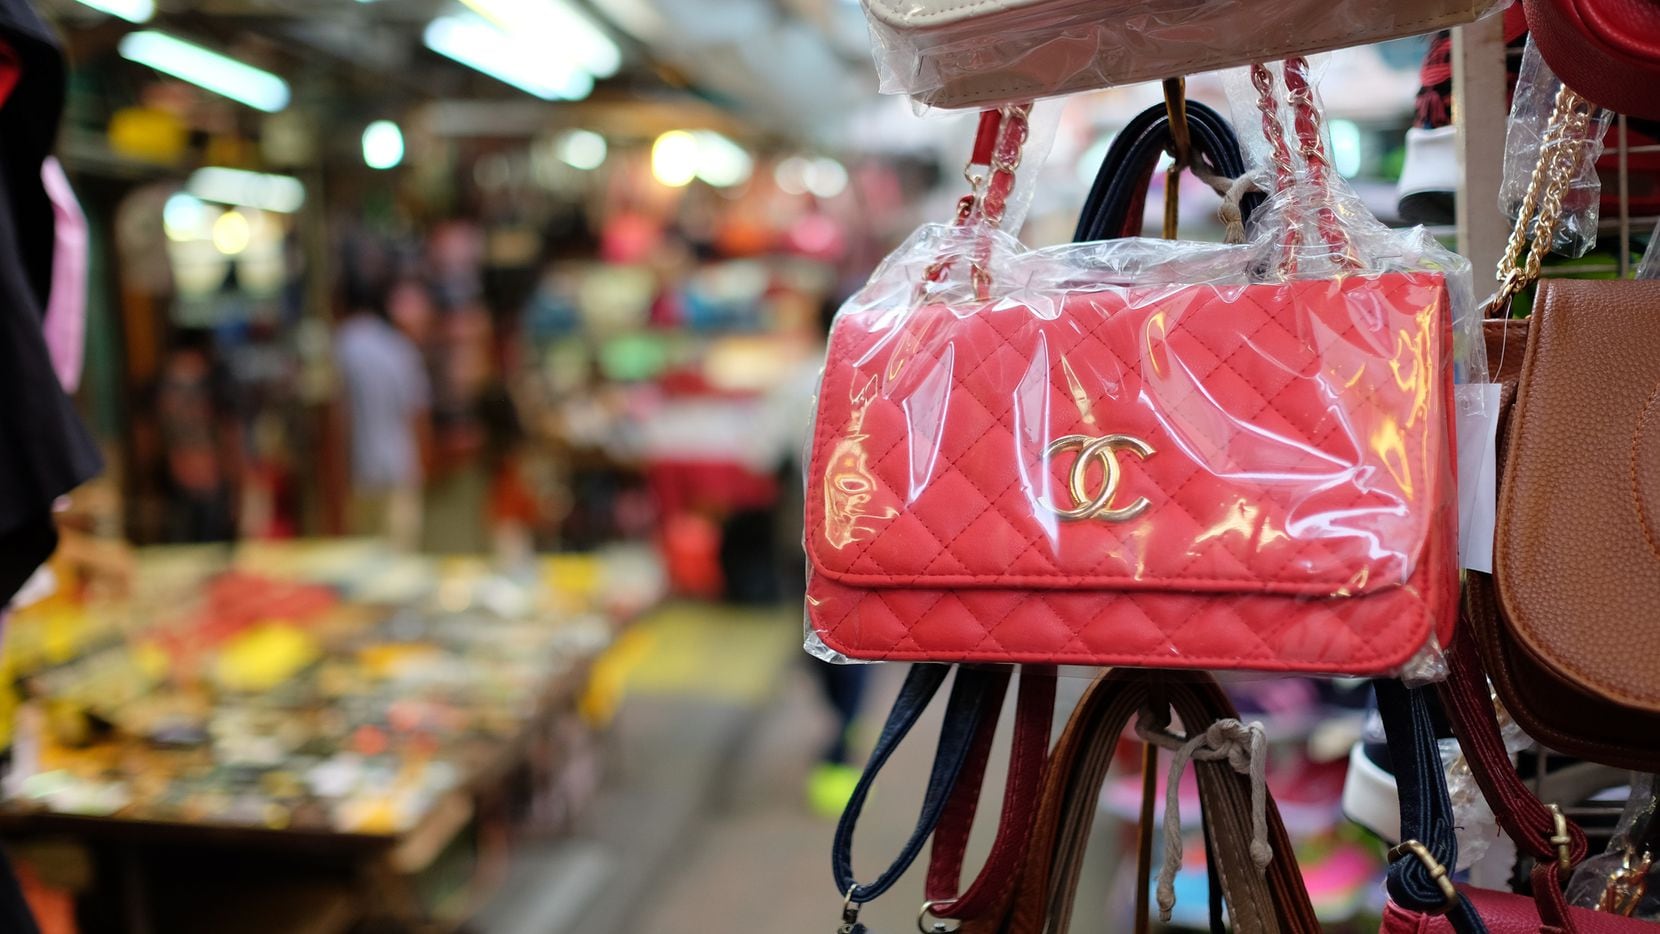 La mayoría de bolsos de marca falsos se fabrican en China y no tienen la misma calidad de los productos originales. Los vendedores pueden enfrentar cargos penales.